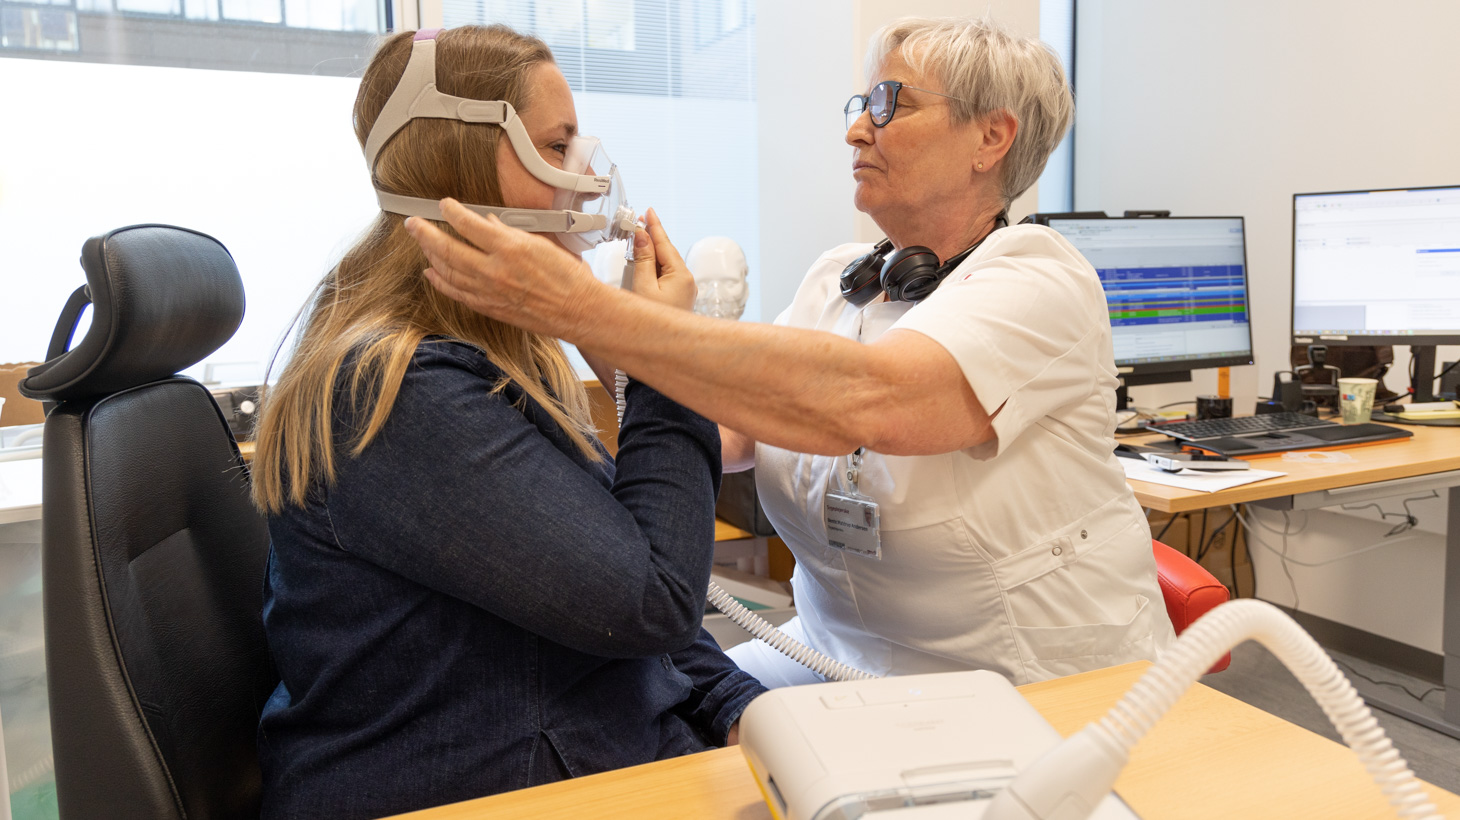 CPAP maske sættes på patient